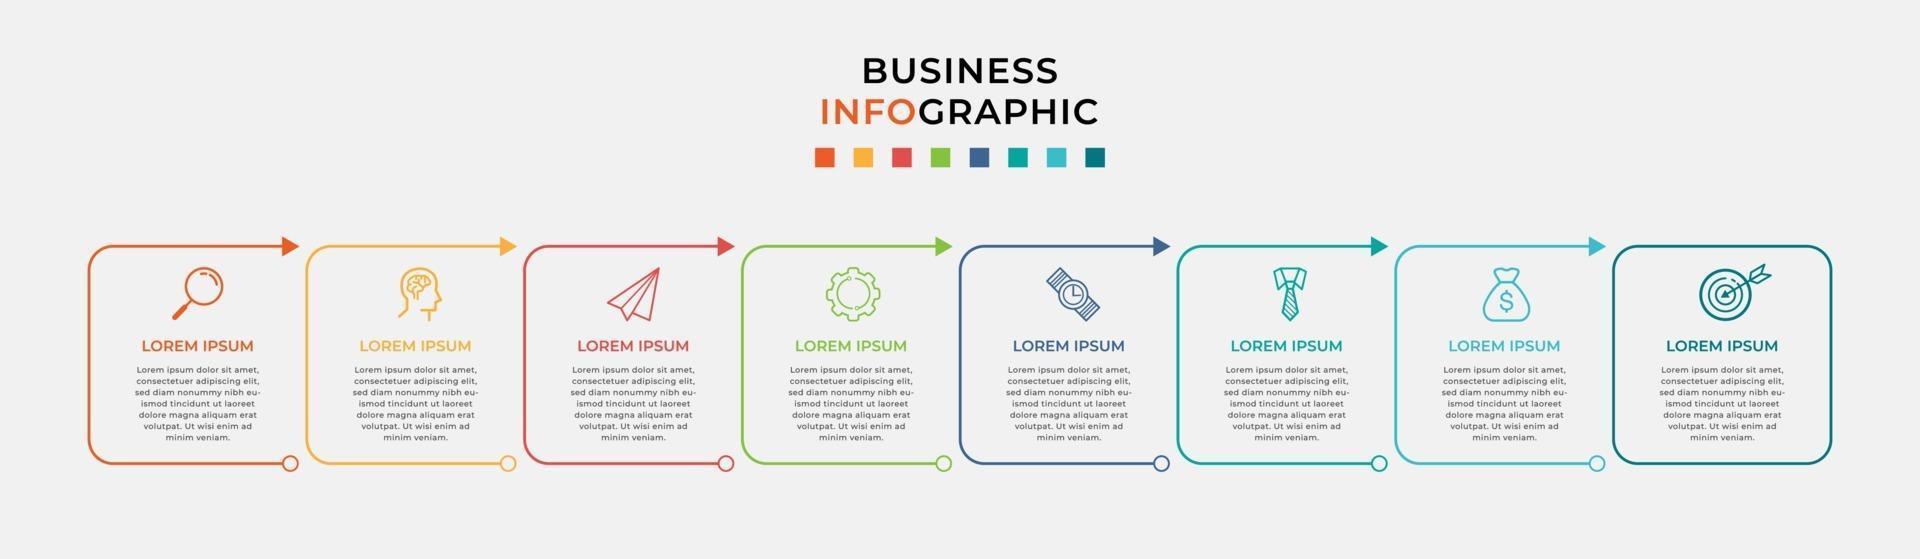 modelo de negócios de design de infográfico com ícones e 8 opções ou etapas vetor